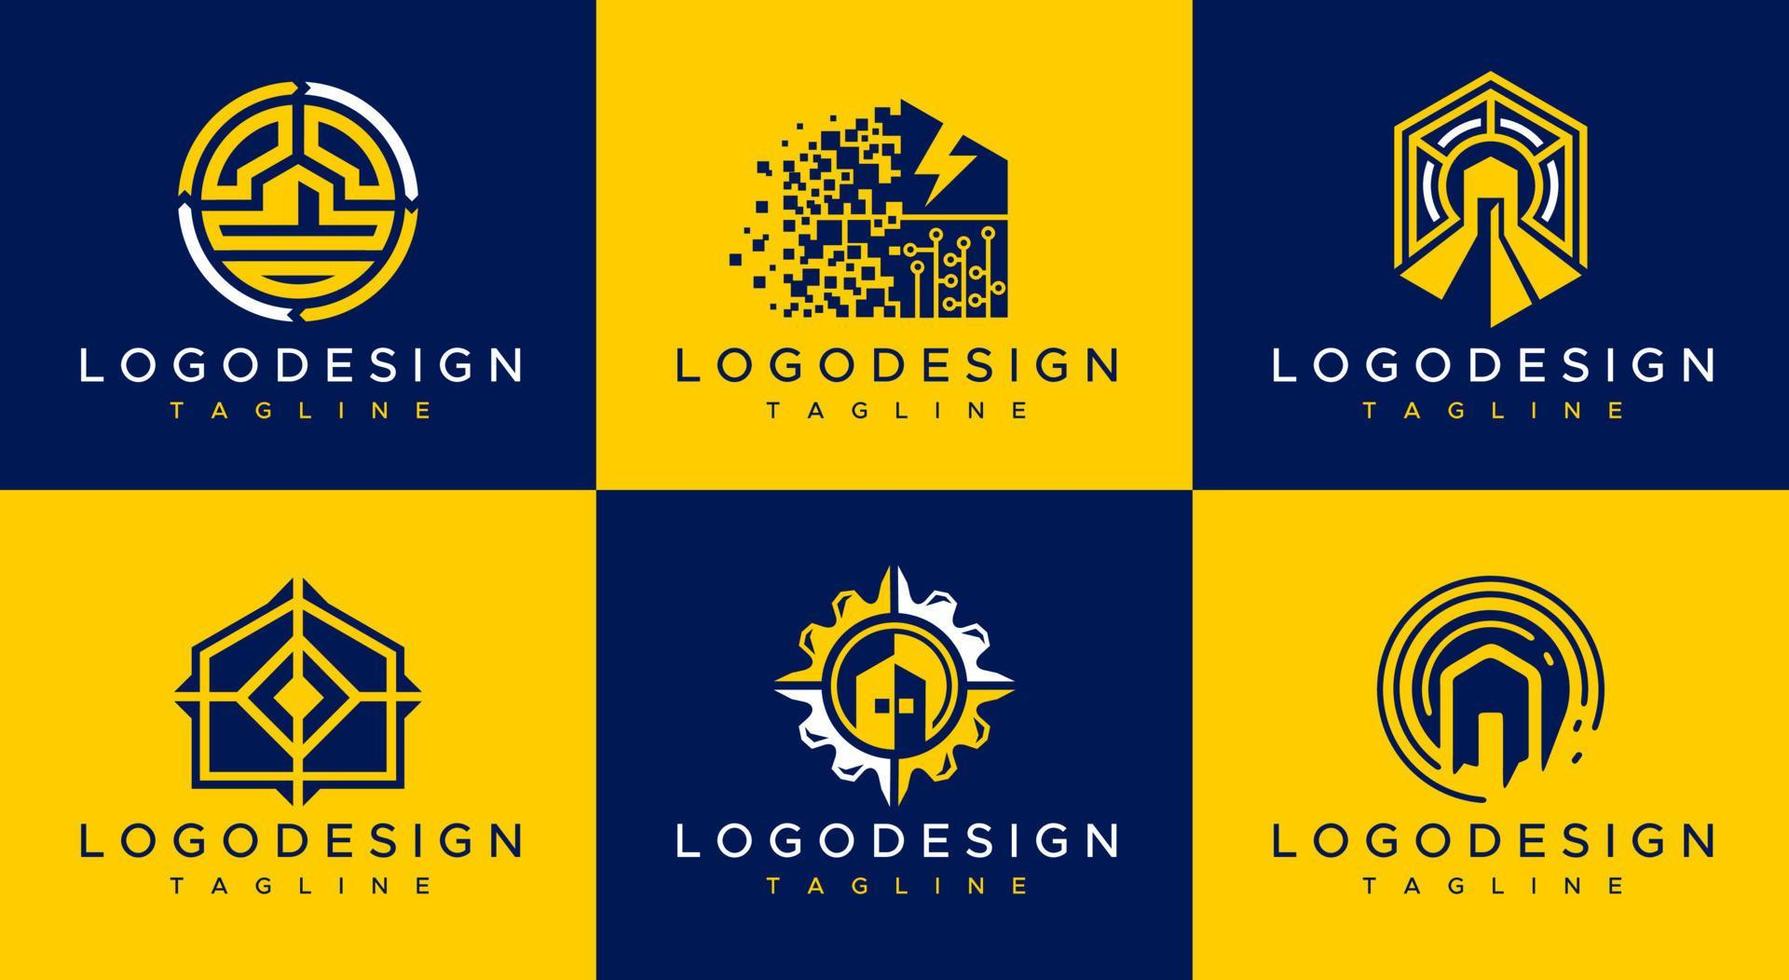 colección de plantillas de diseño de logotipo de hogar moderno. conjunto de vectores del logotipo de la casa de tecnología.